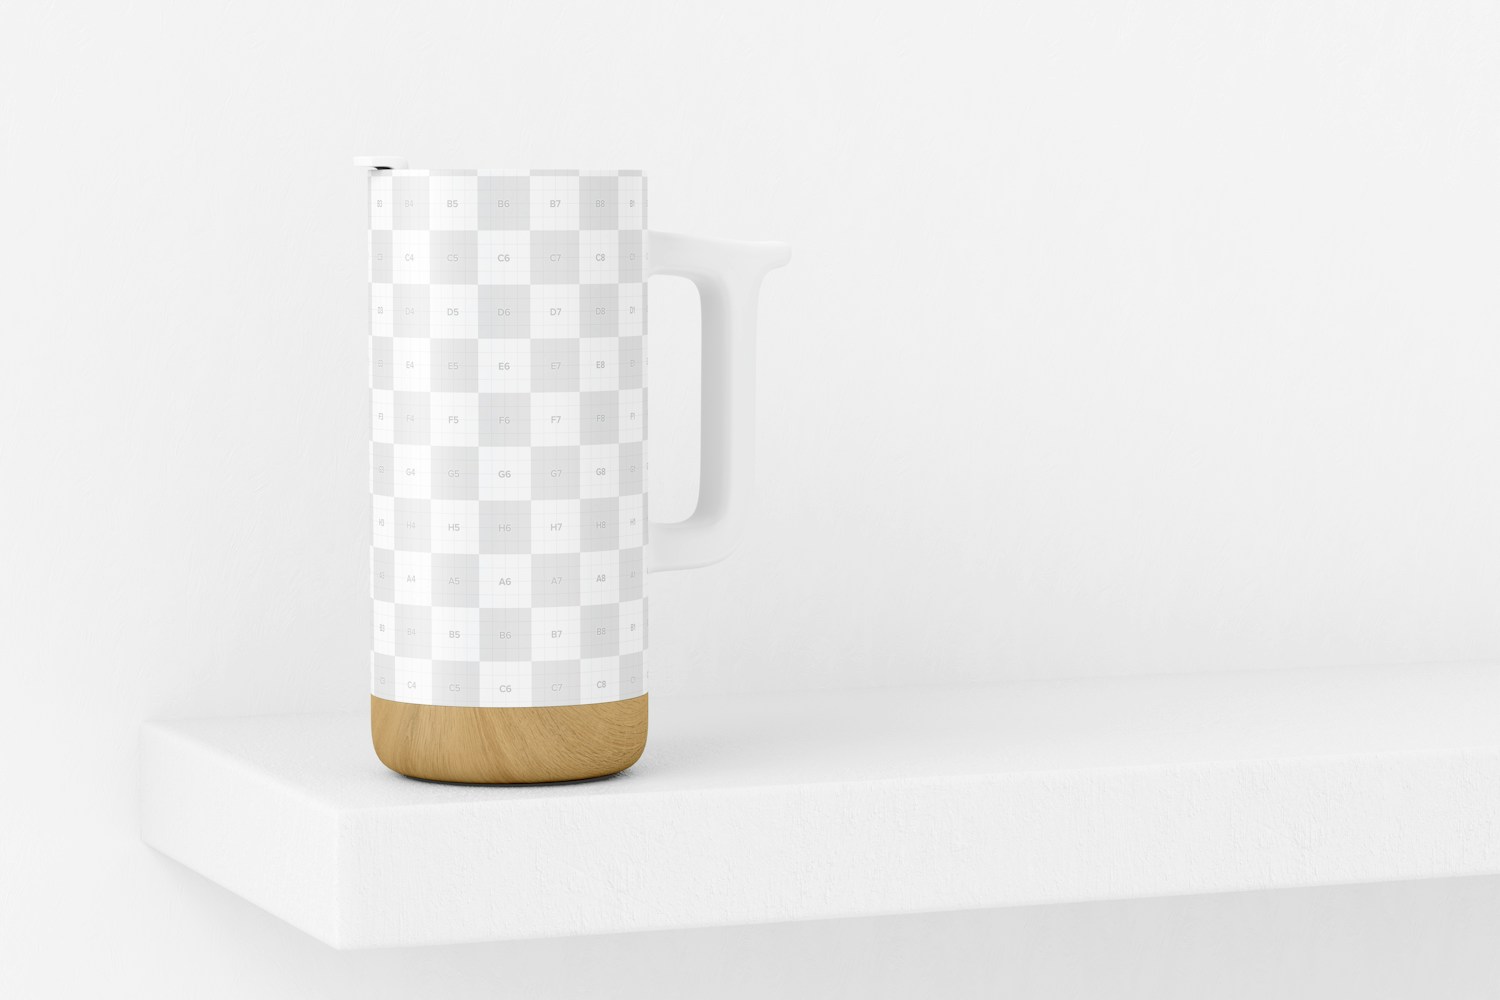 16 oz Ceramic Mug with Wood Base Mockup, Perspective